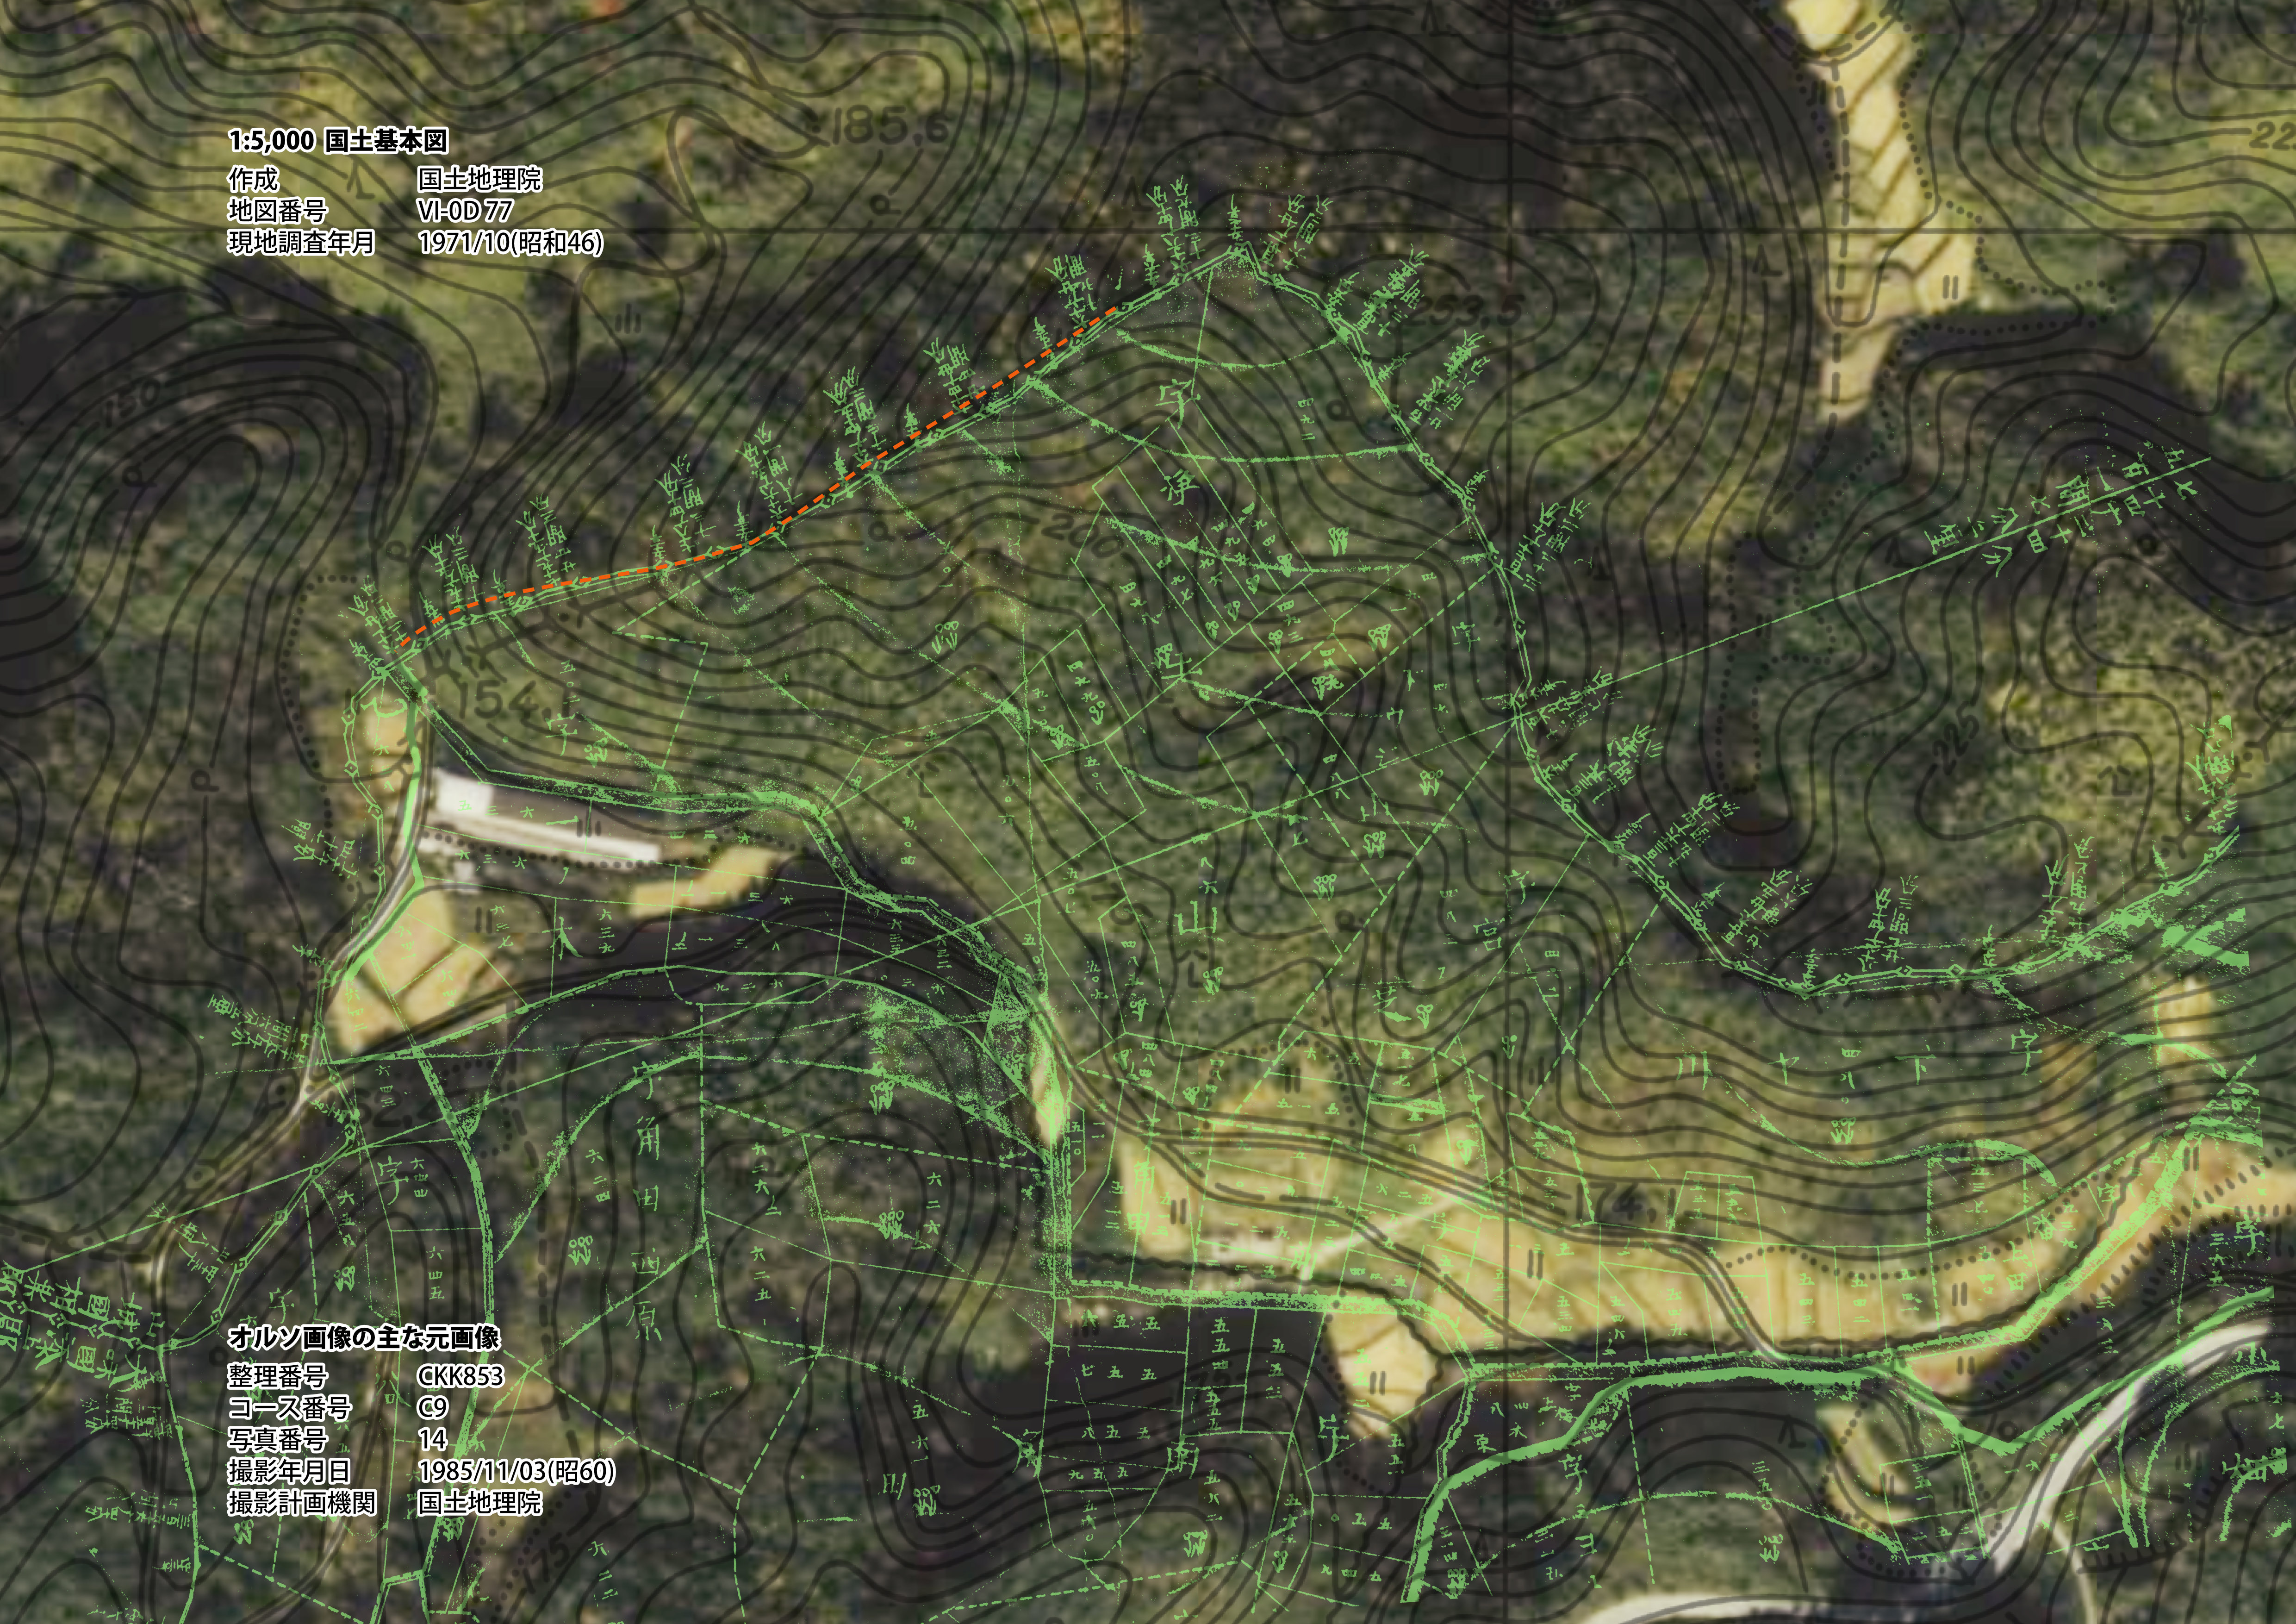 １９８５年の航空写真と国土基本図の等高線と鳴川村実測全図を合成